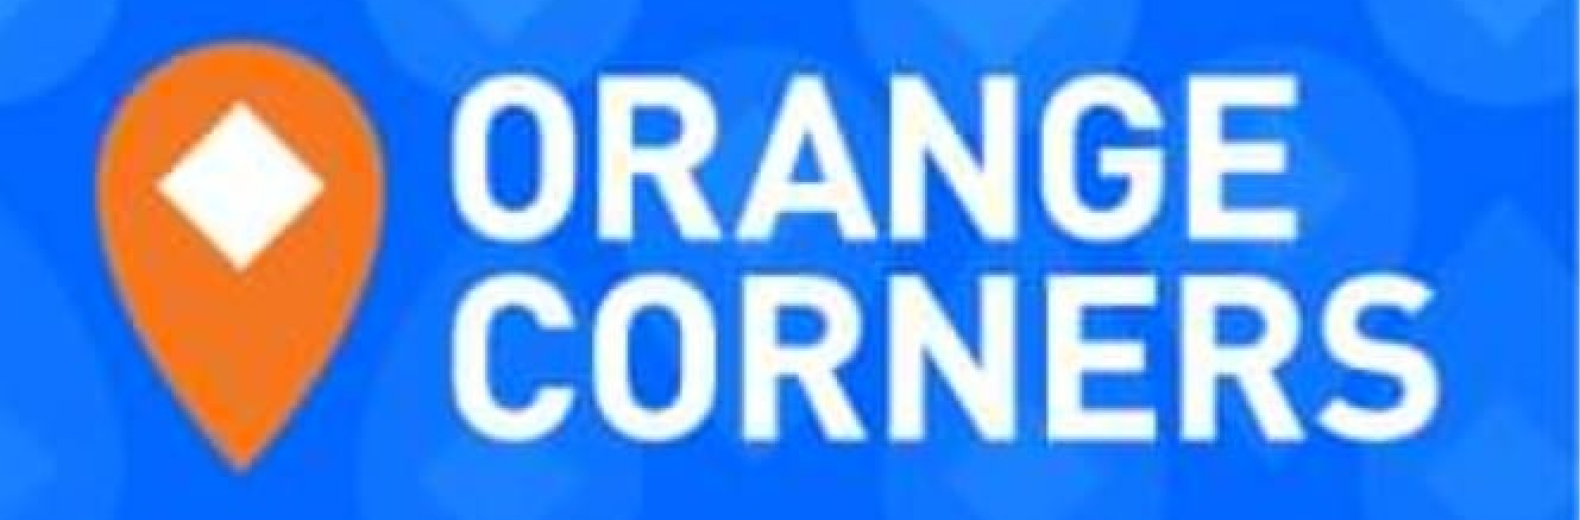 Orange Corners